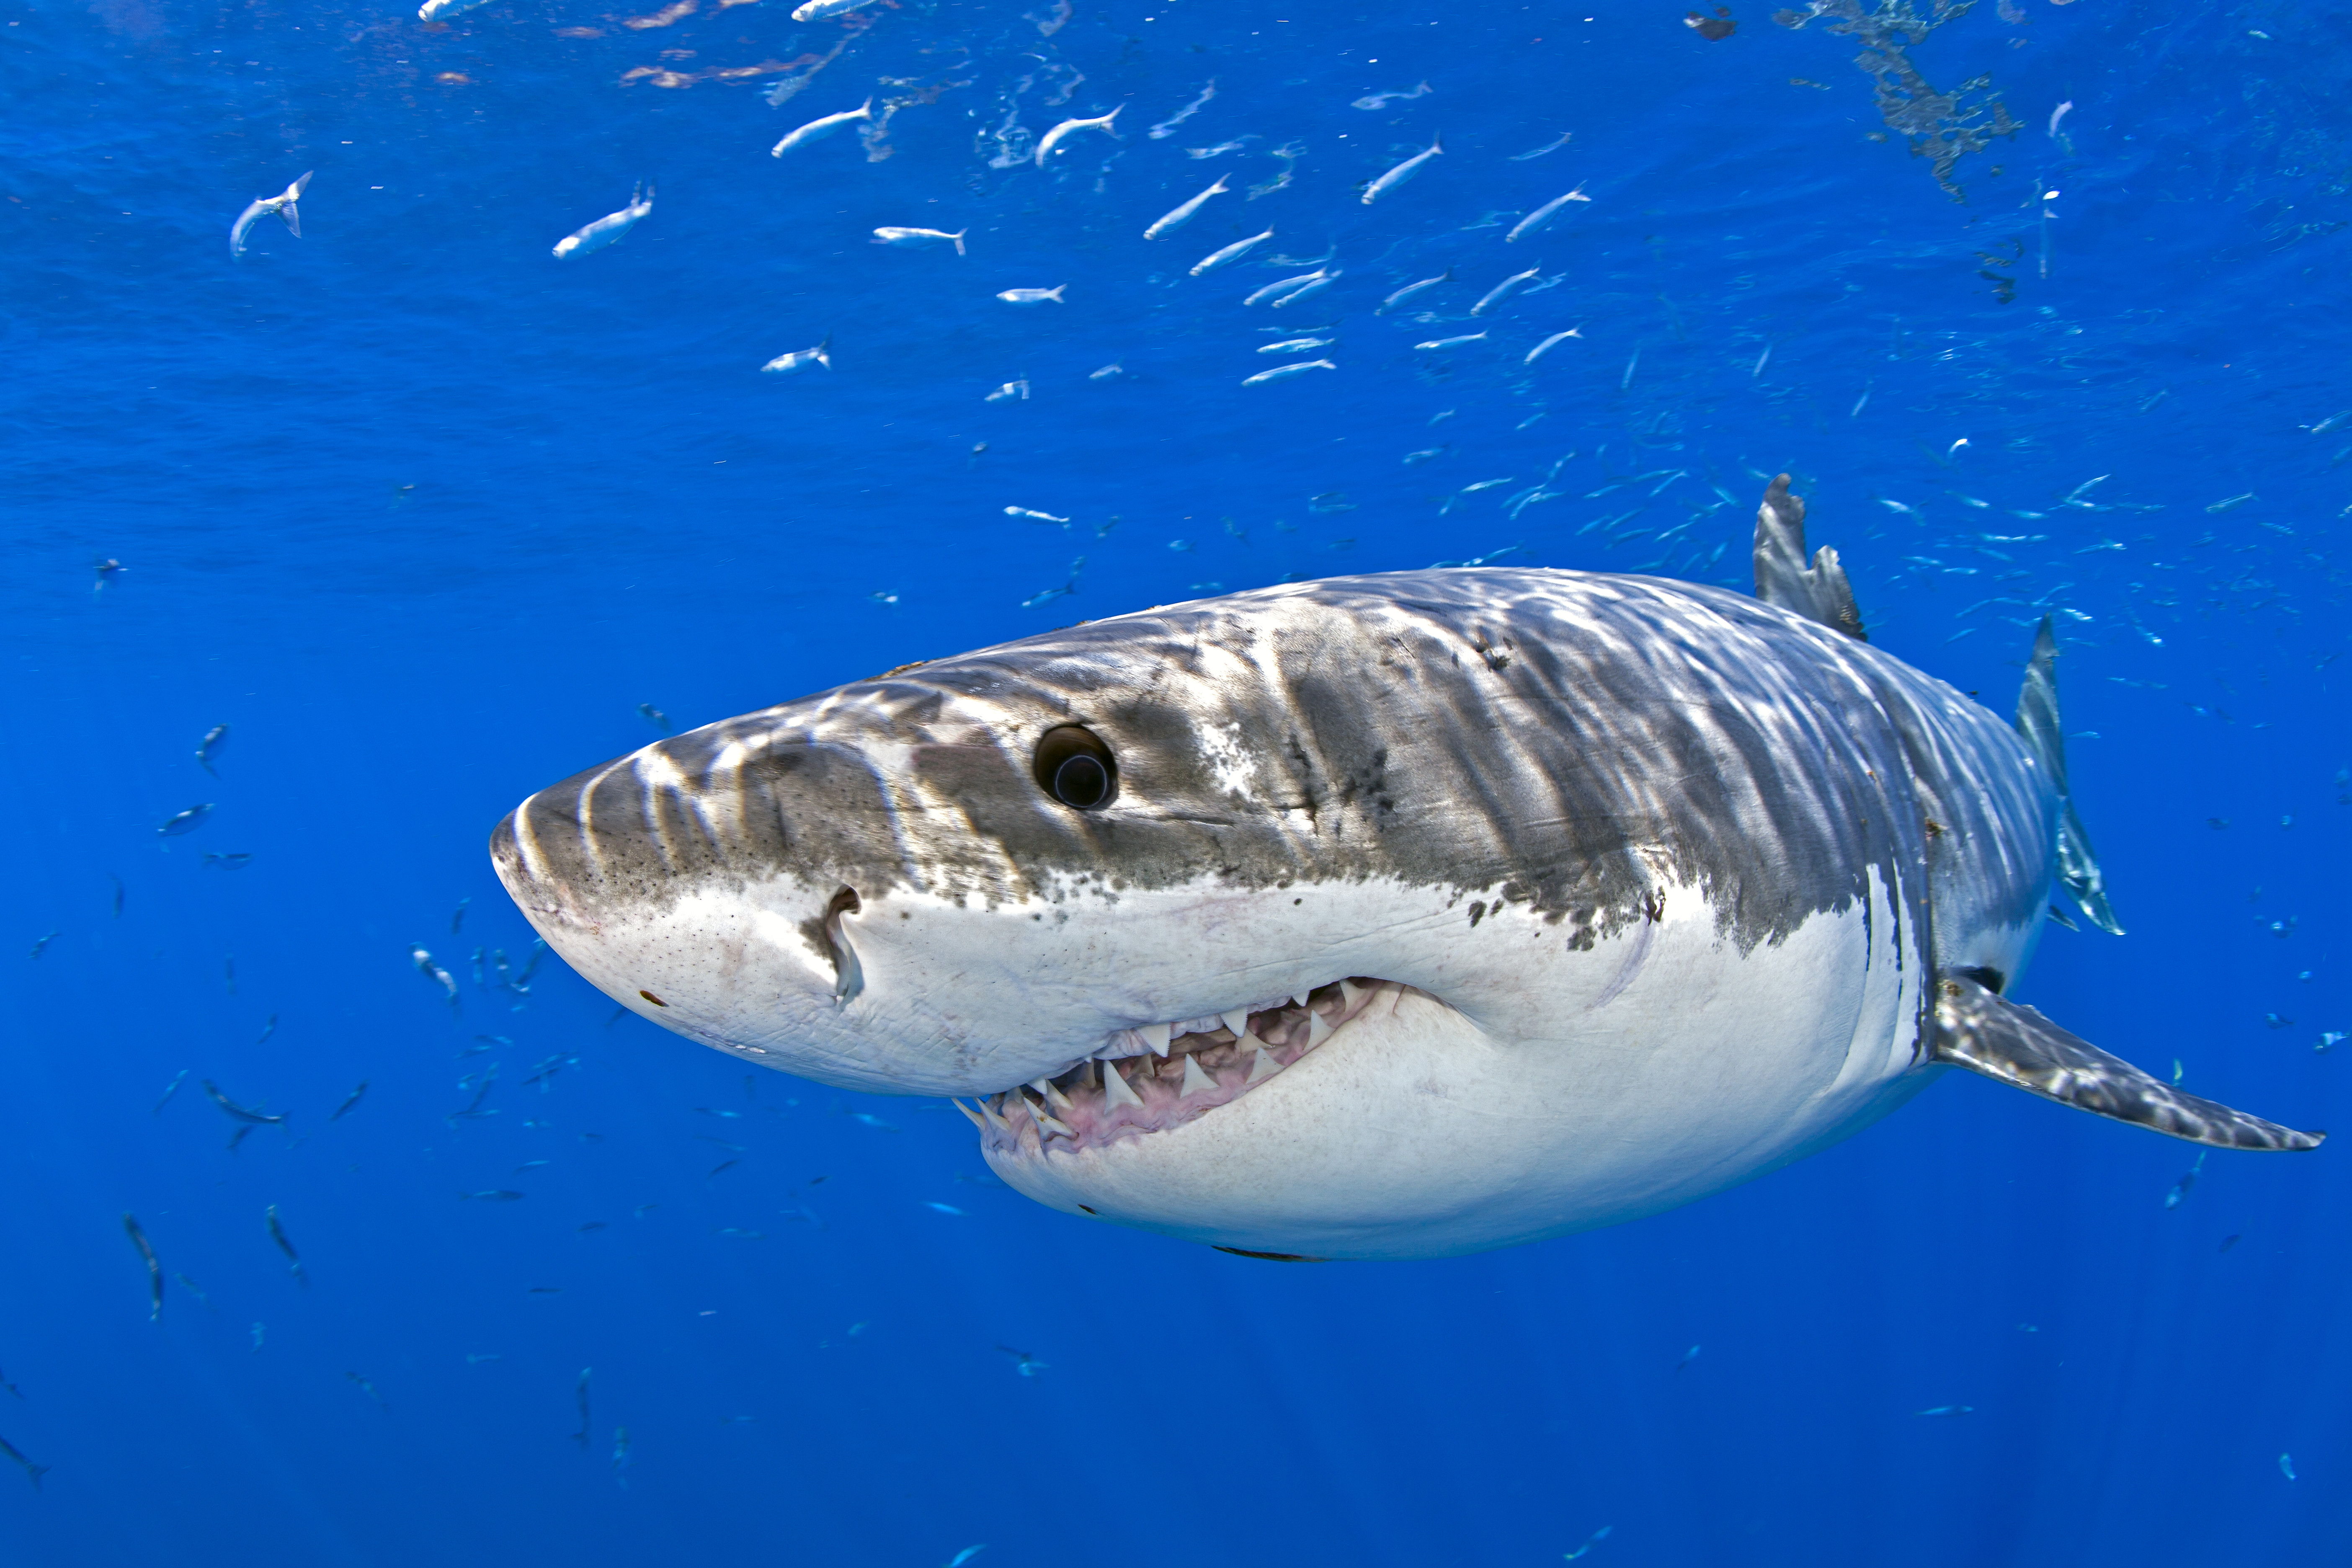 Tonhalból kicsit több lett az elmúlt évtizedben, a cápákra rájárt a rúd